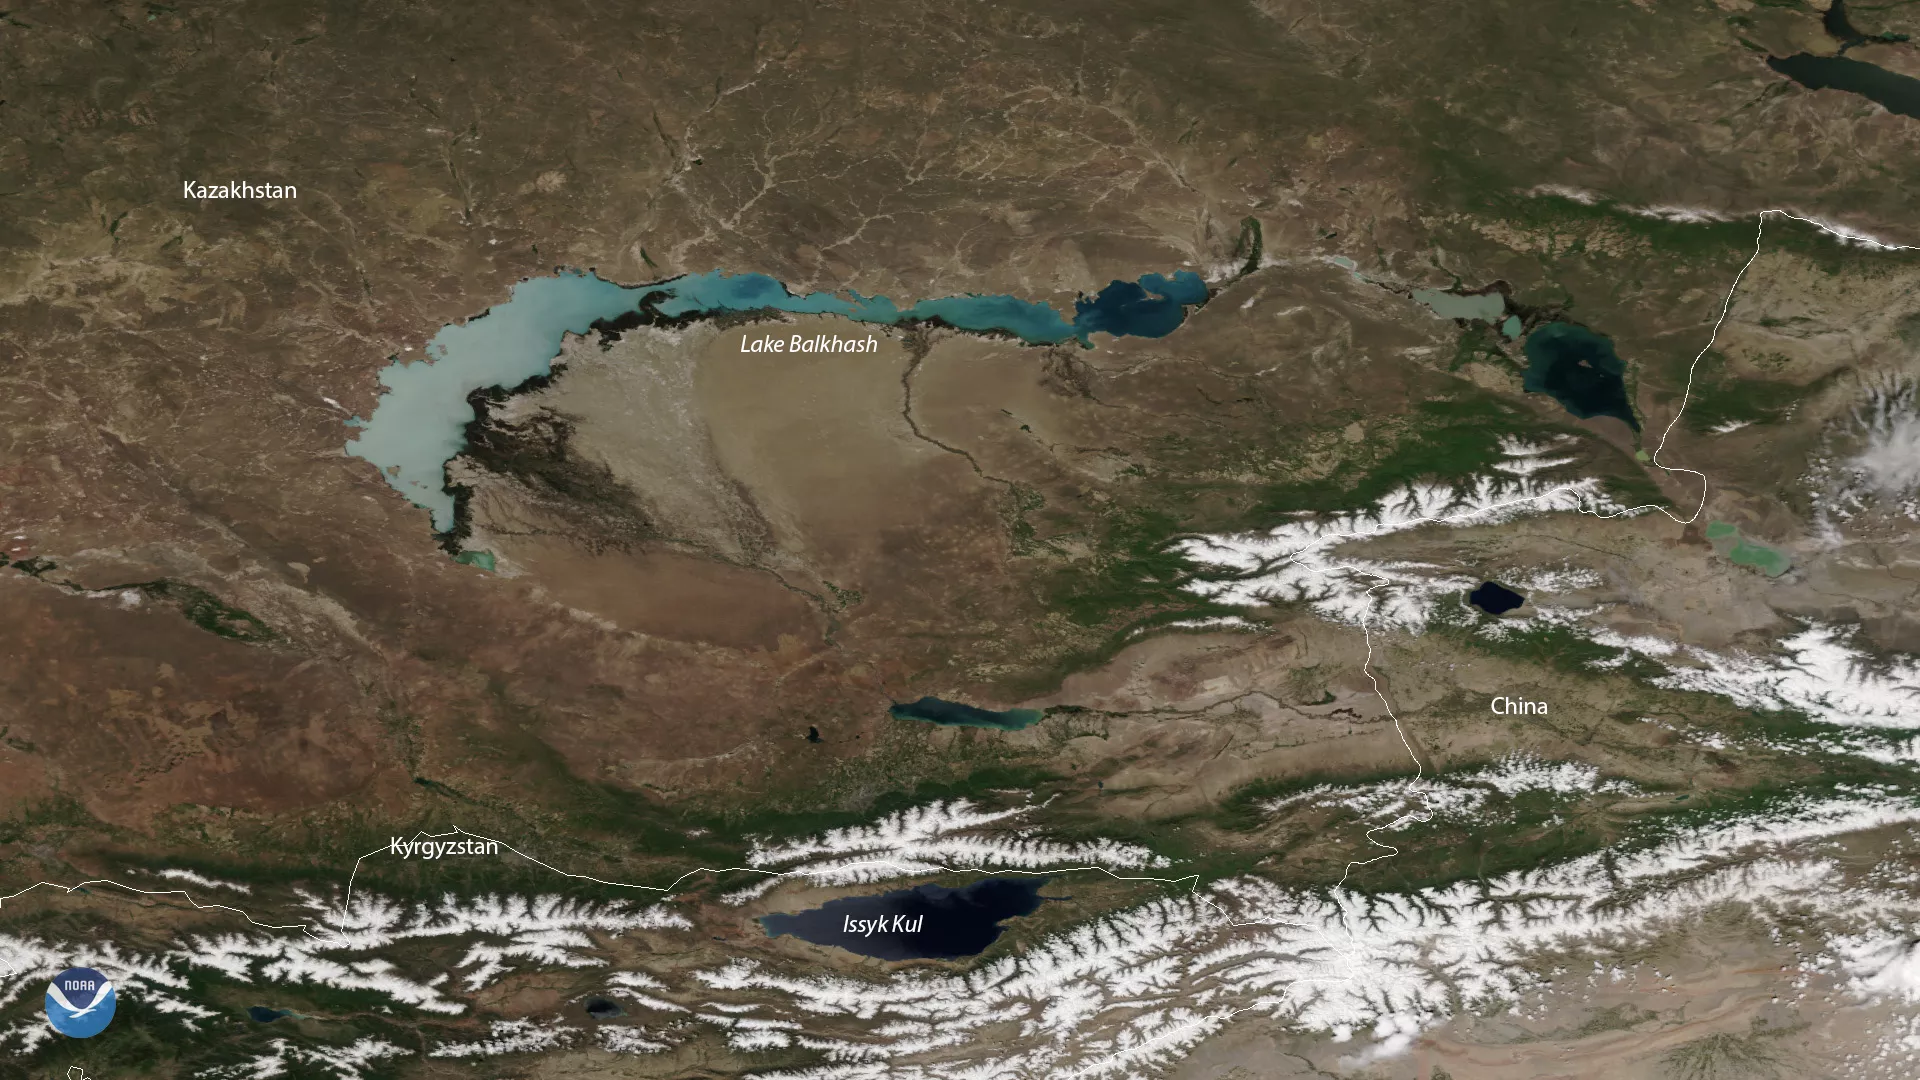 Lake Balkhash in Kazakhstan